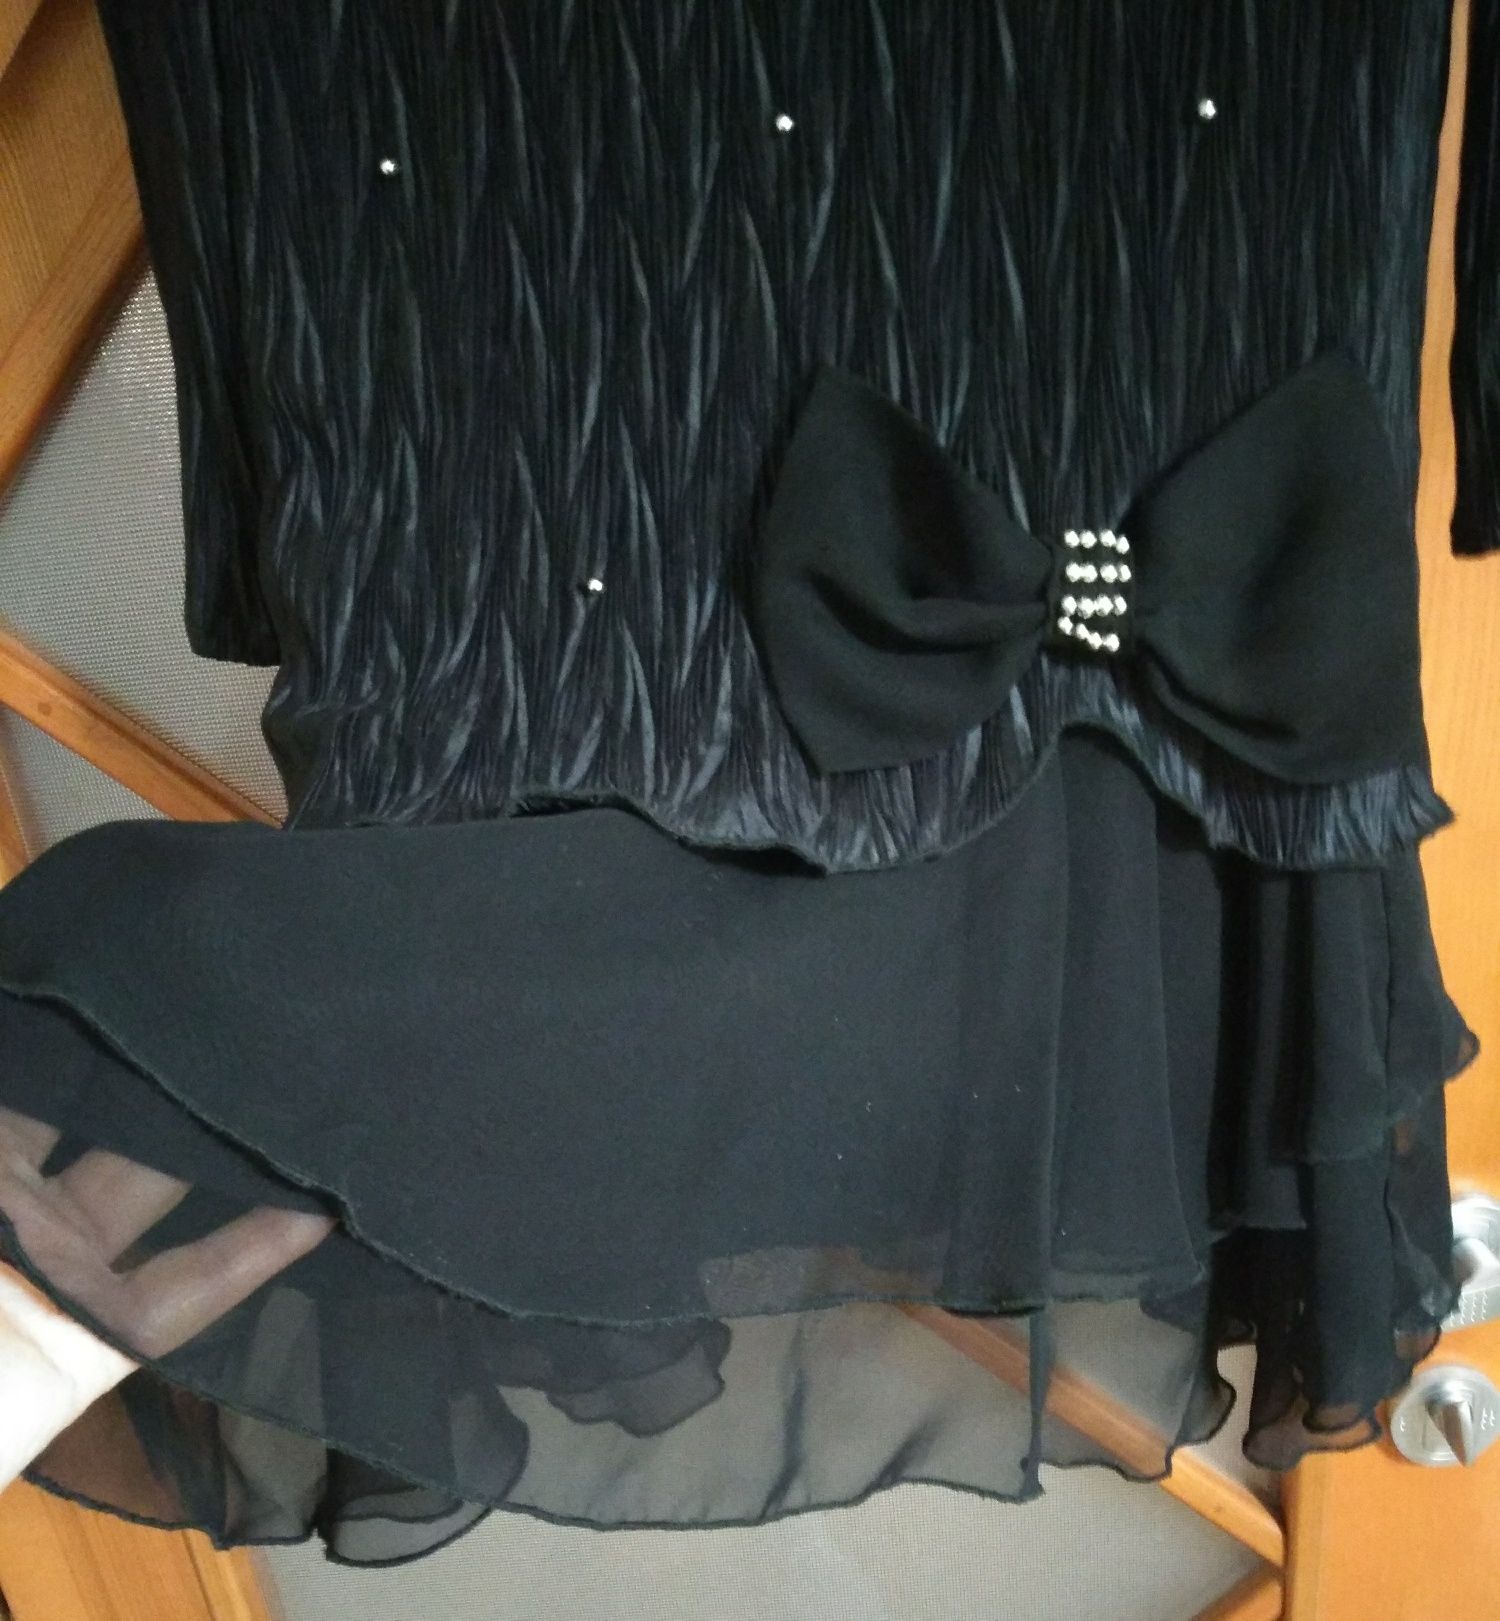 Маленькое черное платье.